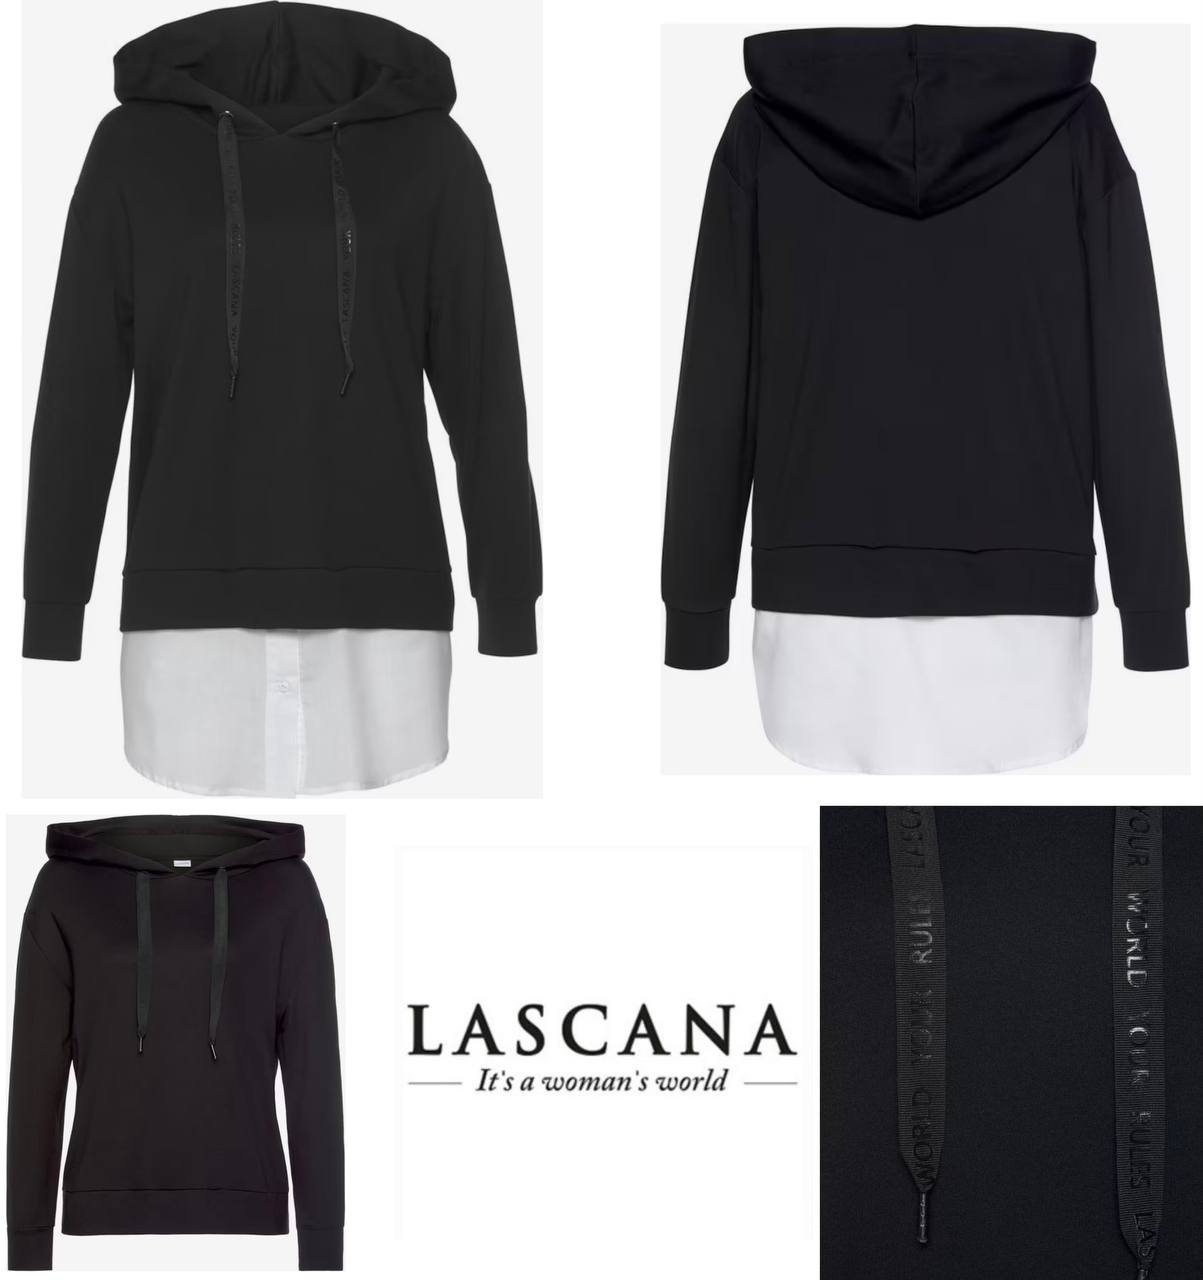 Women's hoodie by Lascana 2 in 1